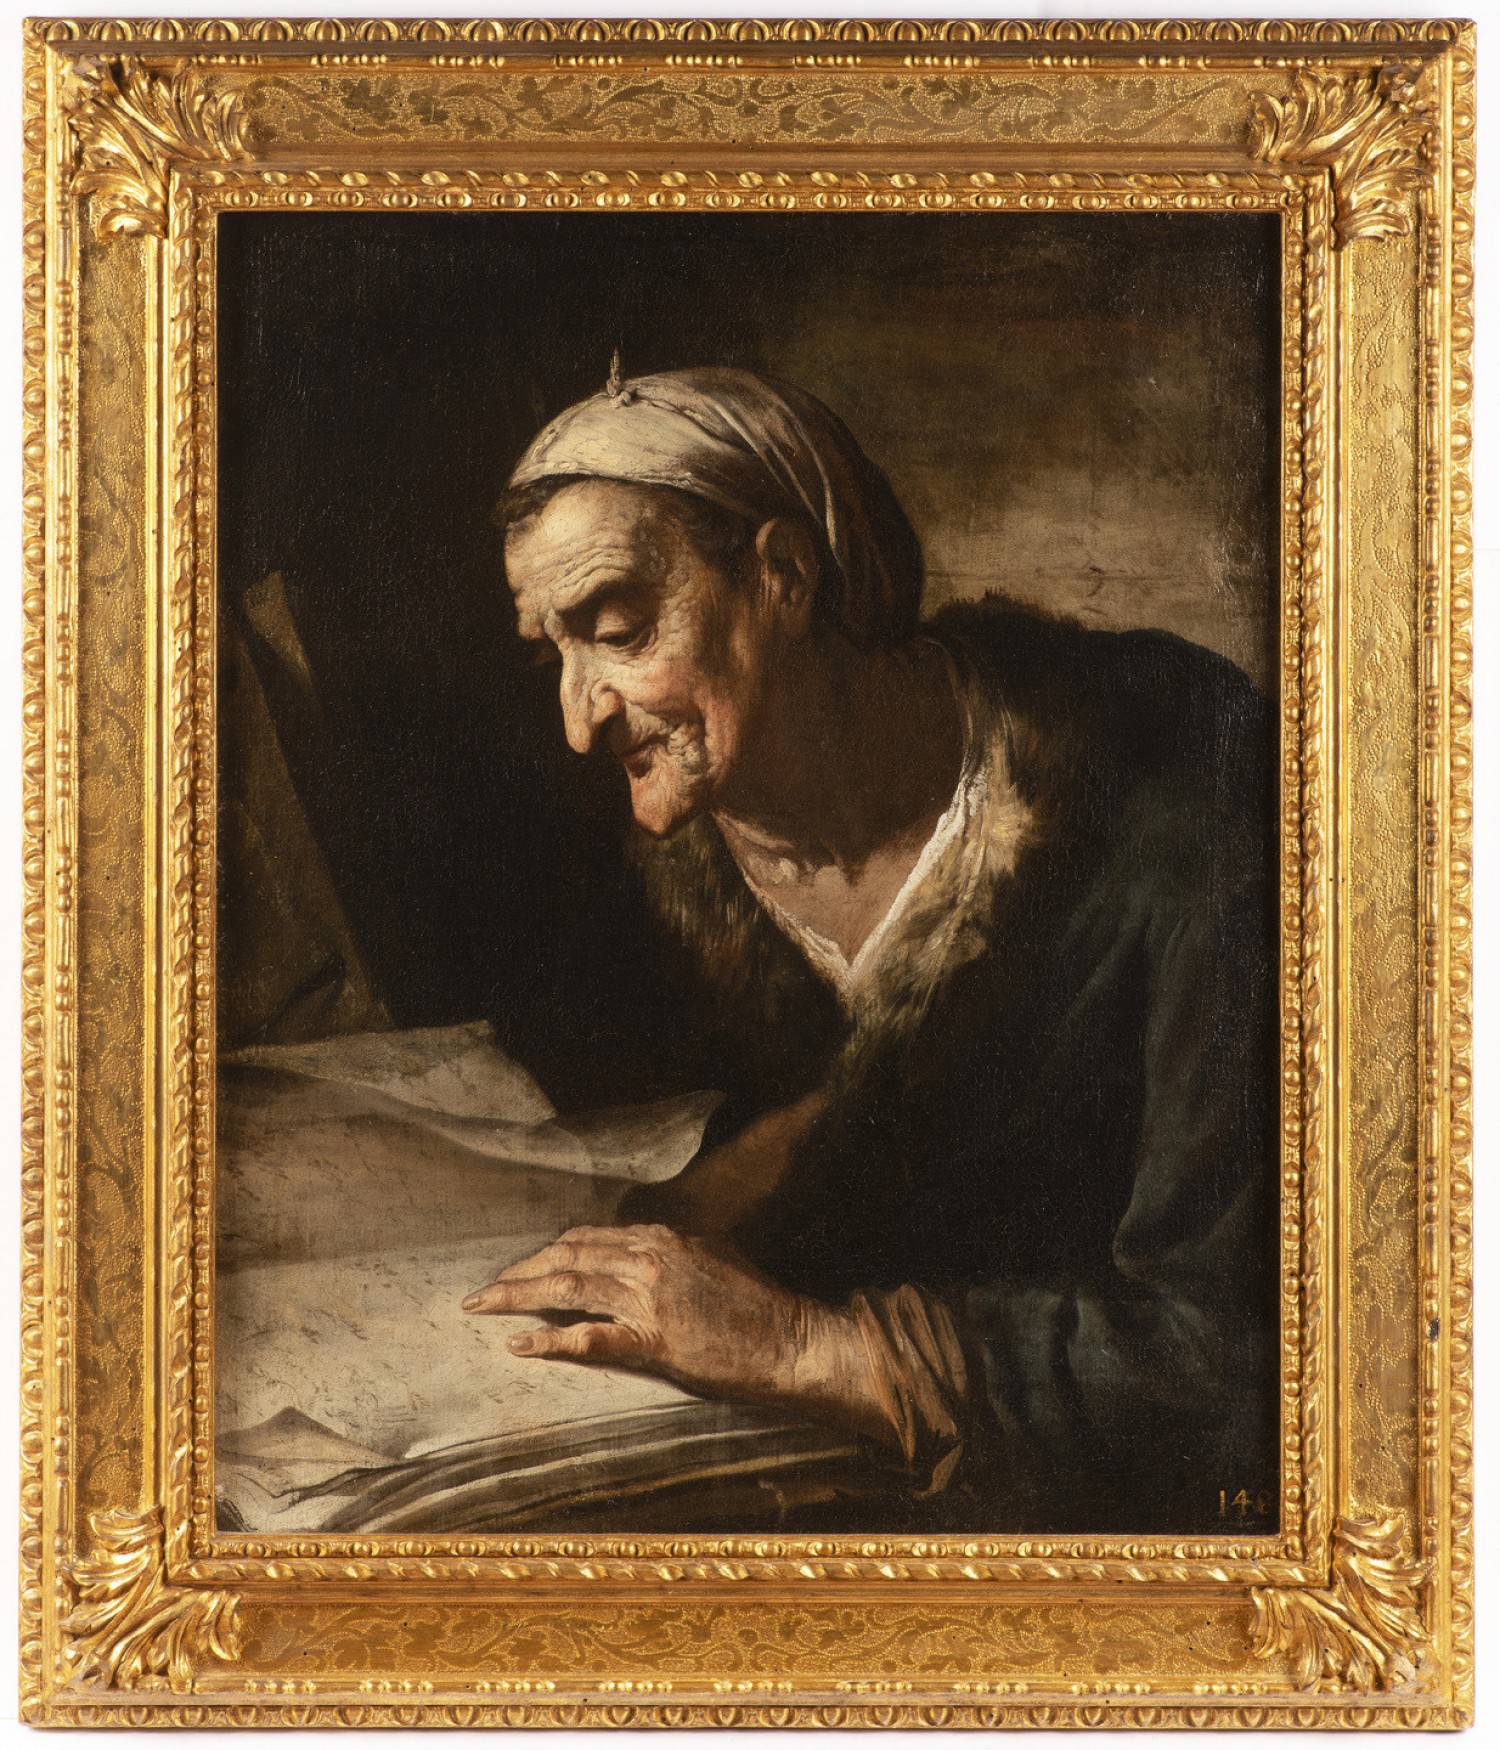 Pietro Bellotti: Stařena s knihou  olej na plátně, 72 cm x 58 cm cena: 620 000 Kč Arcimboldo 28. 3. 2019